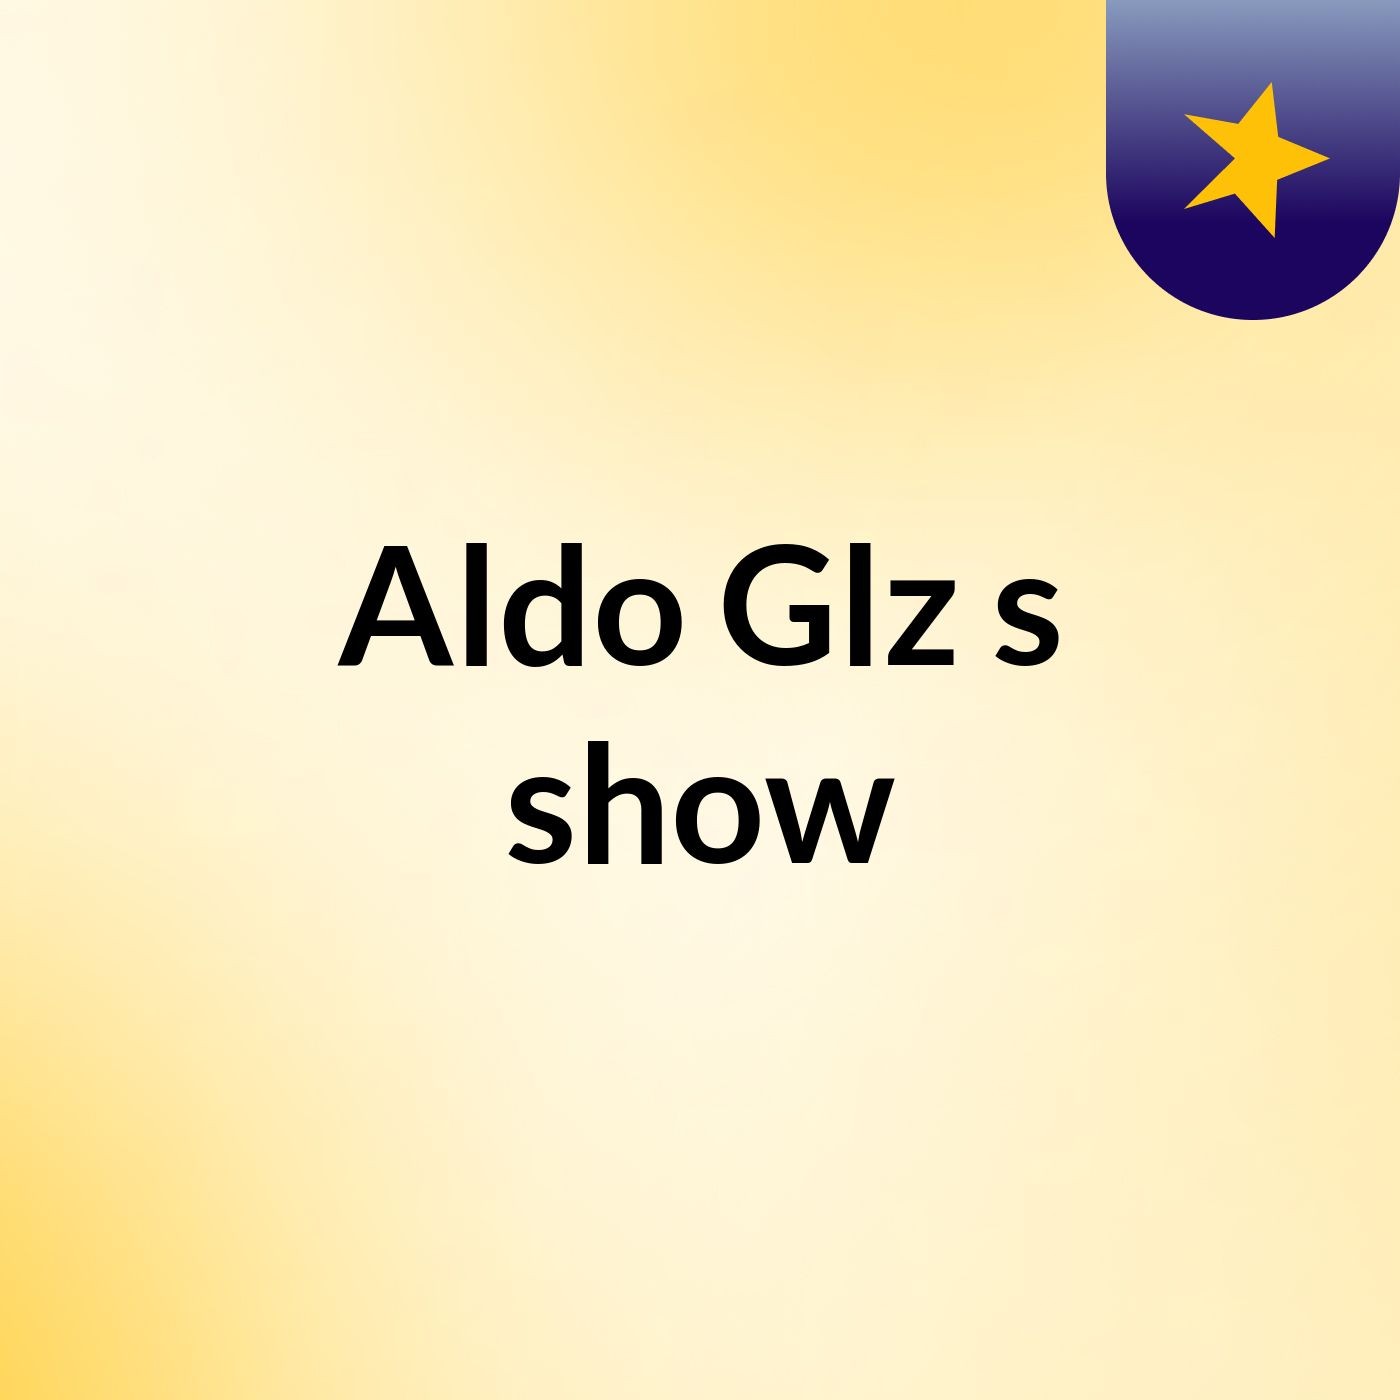 Aldo Glz's show